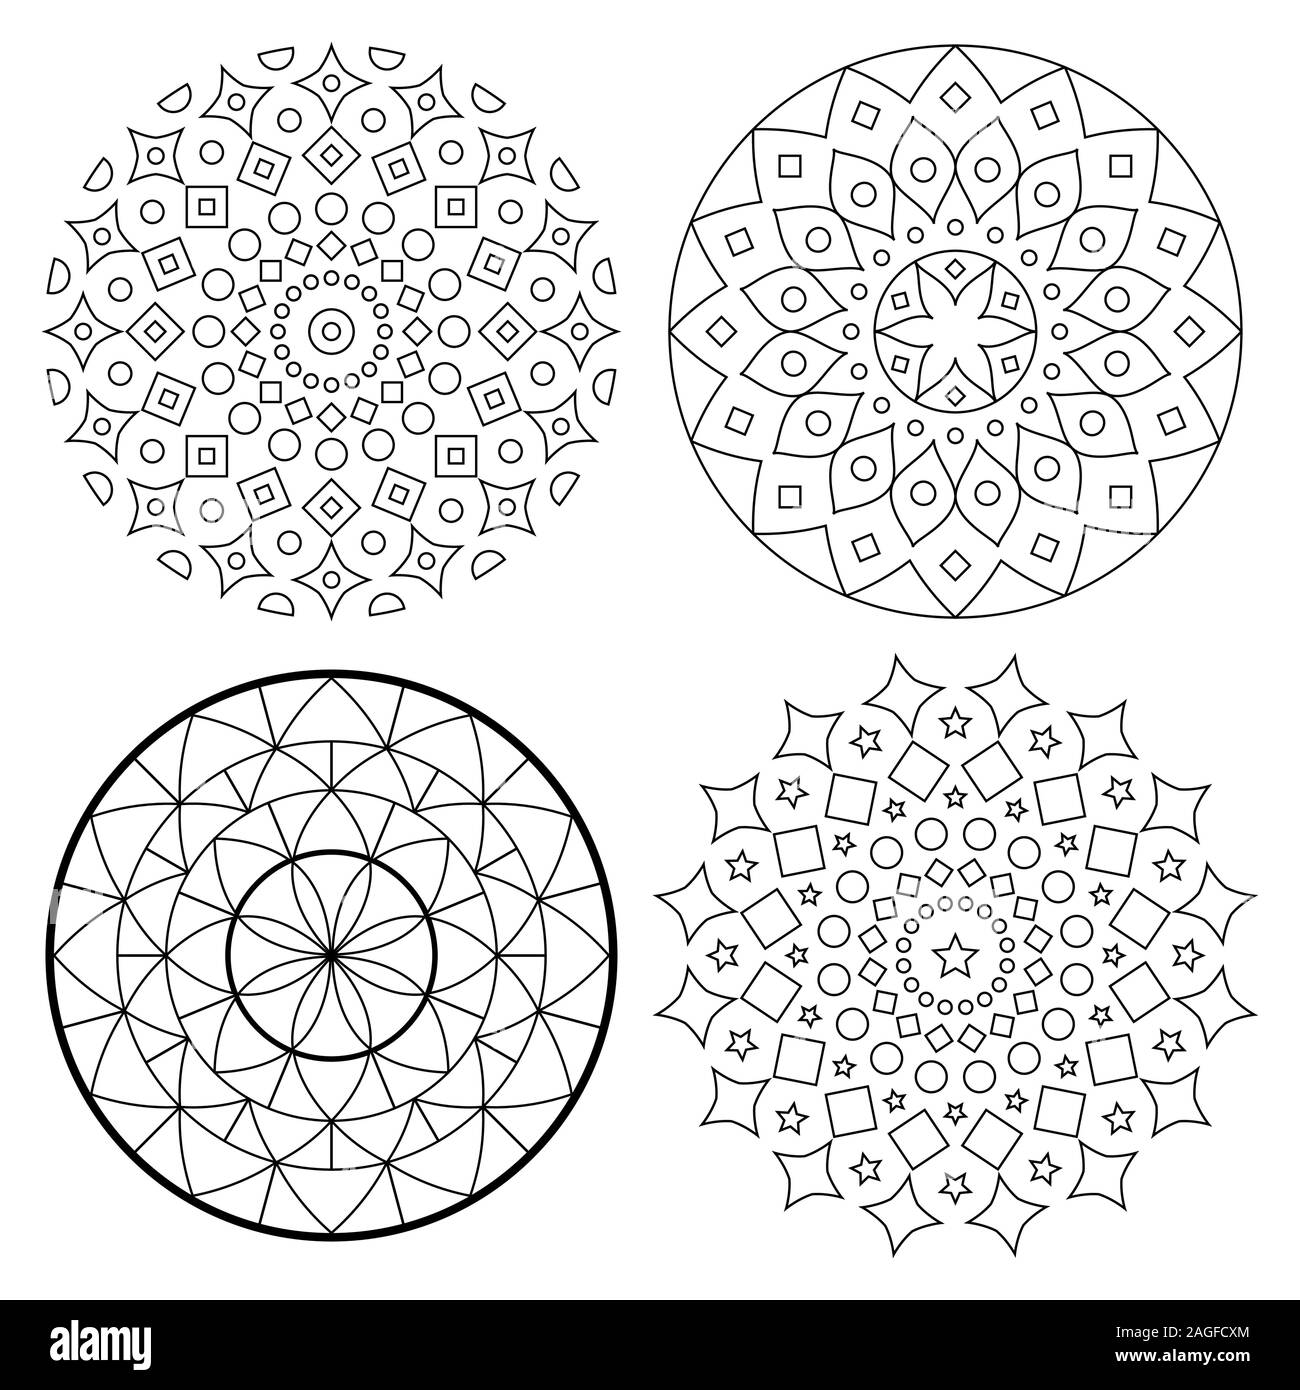 Jeu de motifs vectoriels Mandala avec avc, yoga, design zen bohème ethnique asiatique dessin en noir et blanc - parfait pour des profils des livres à colorier Illustration de Vecteur